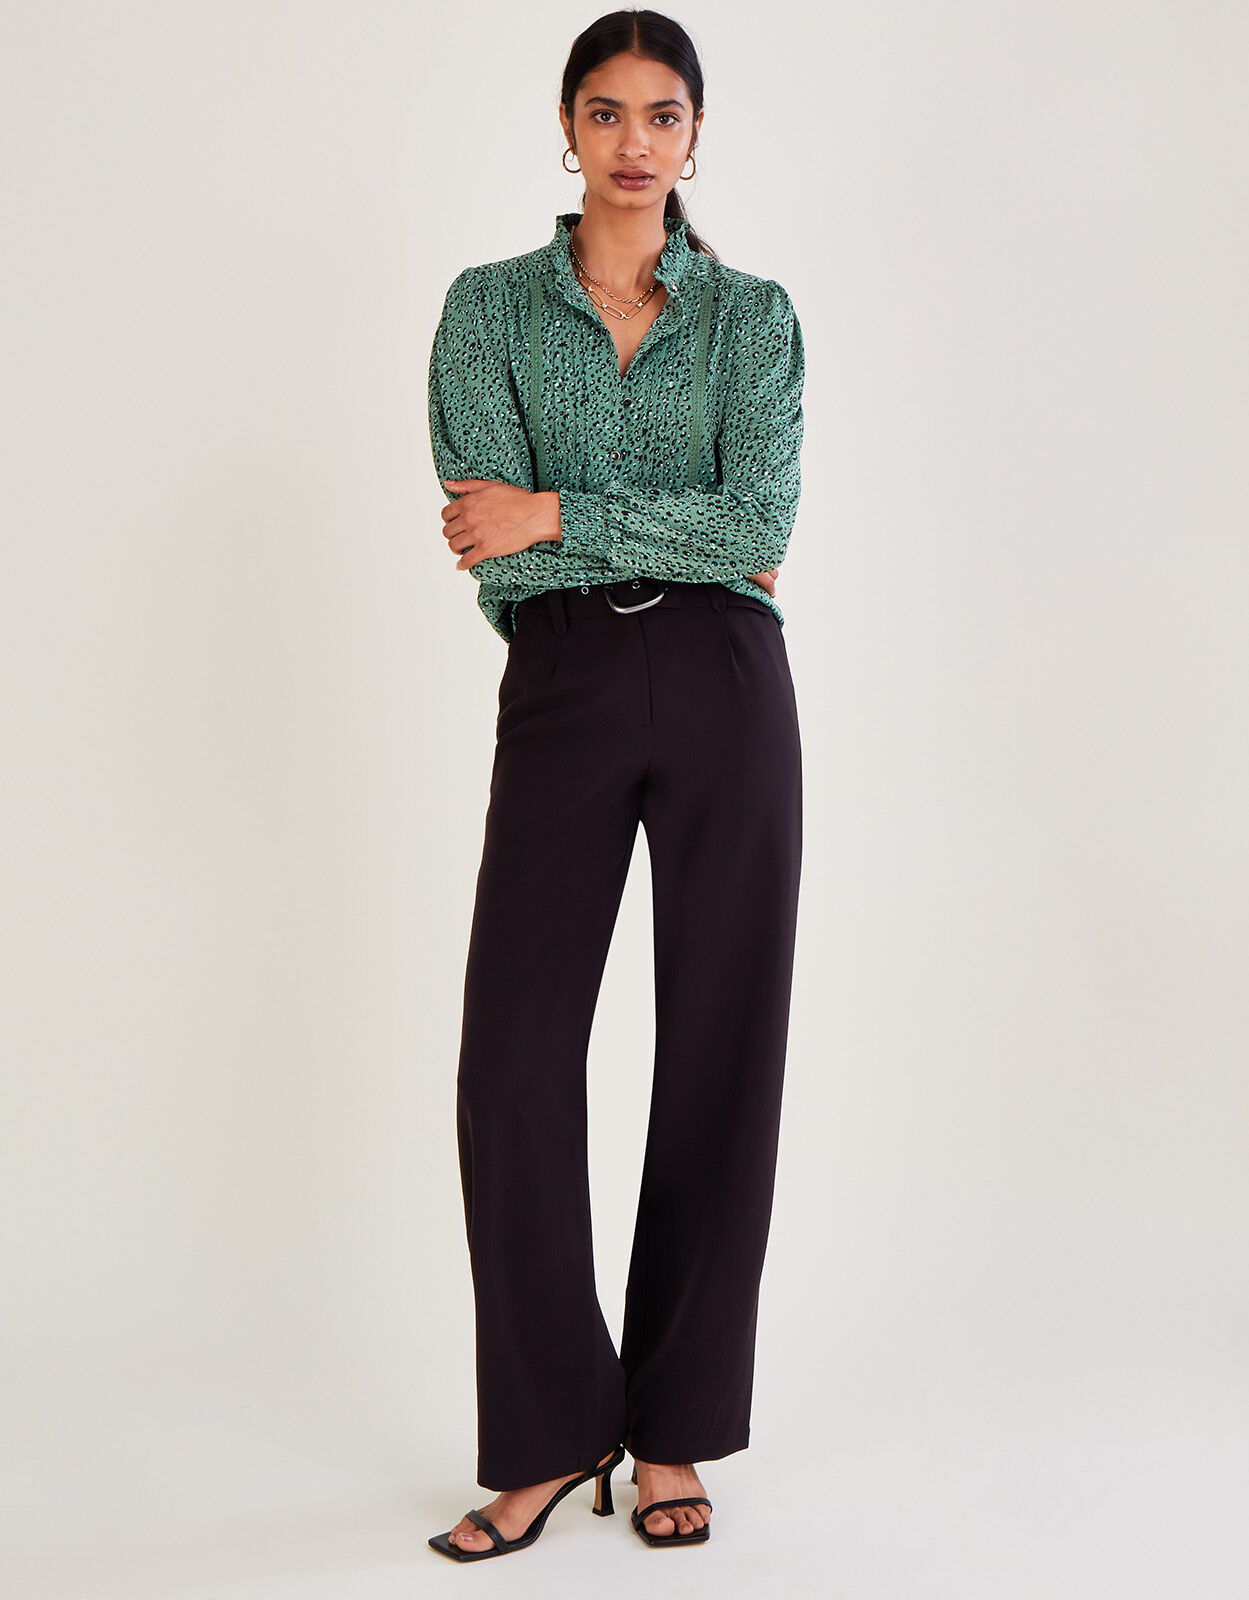 SPACE SIMONA CORSELLINI Polyester trousers cream women elegant and  comfortable model | Faraone.